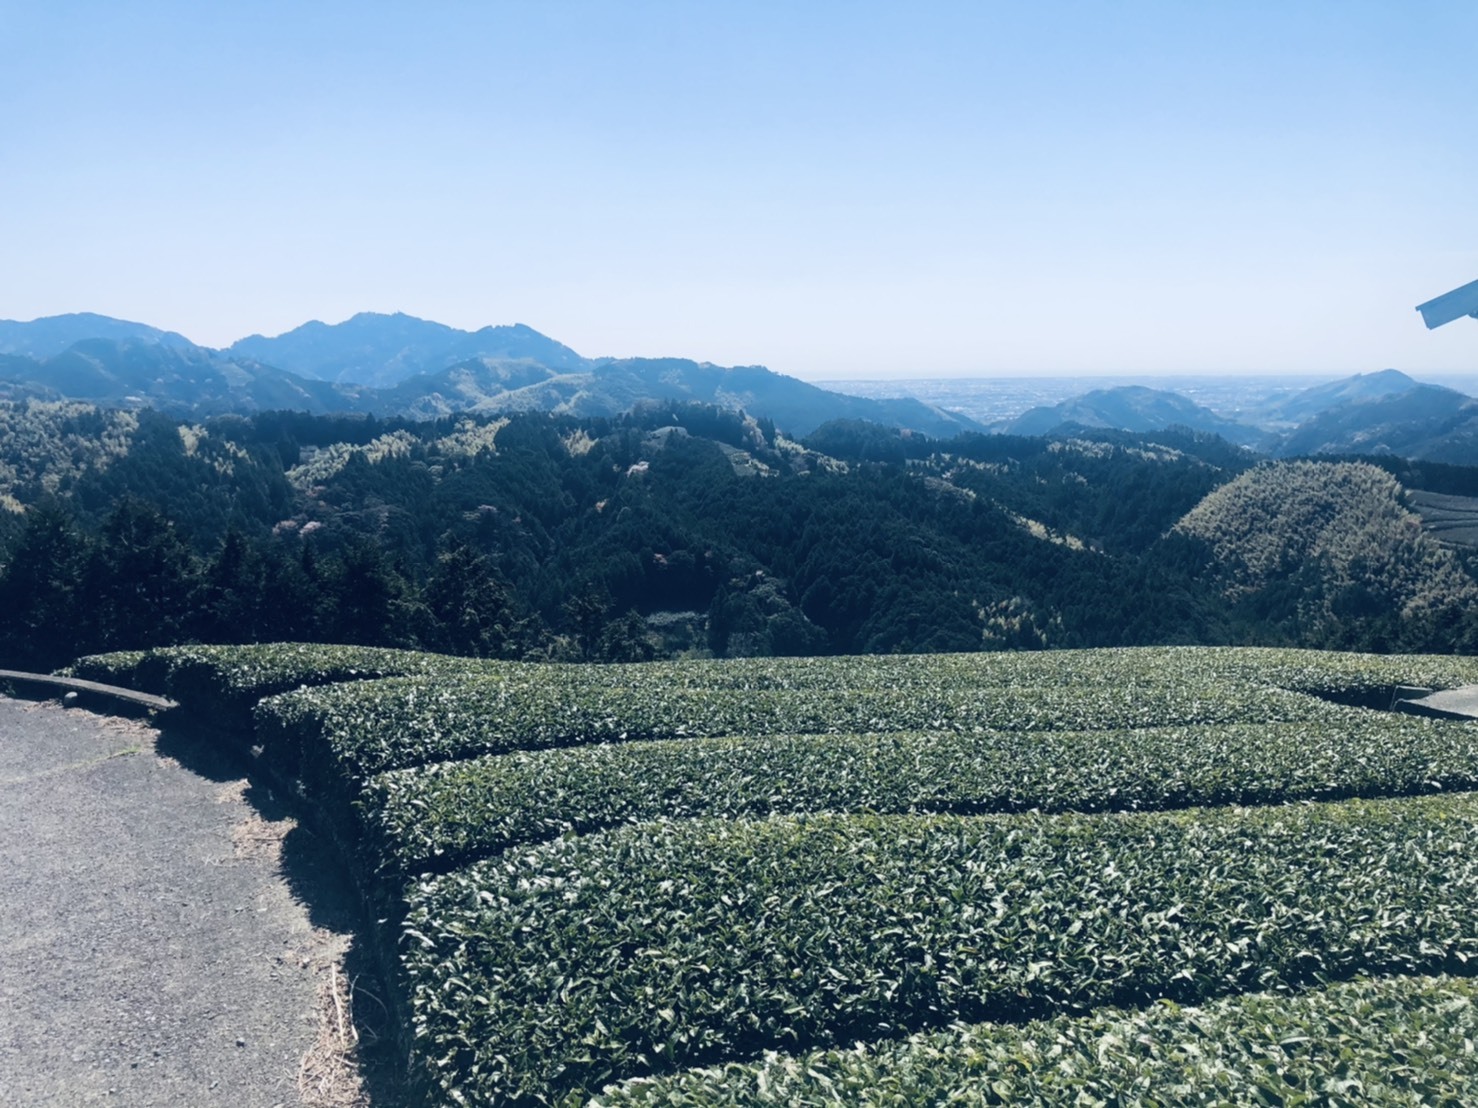 山間の茶畑。こちらも山々を見下ろす絶景です。